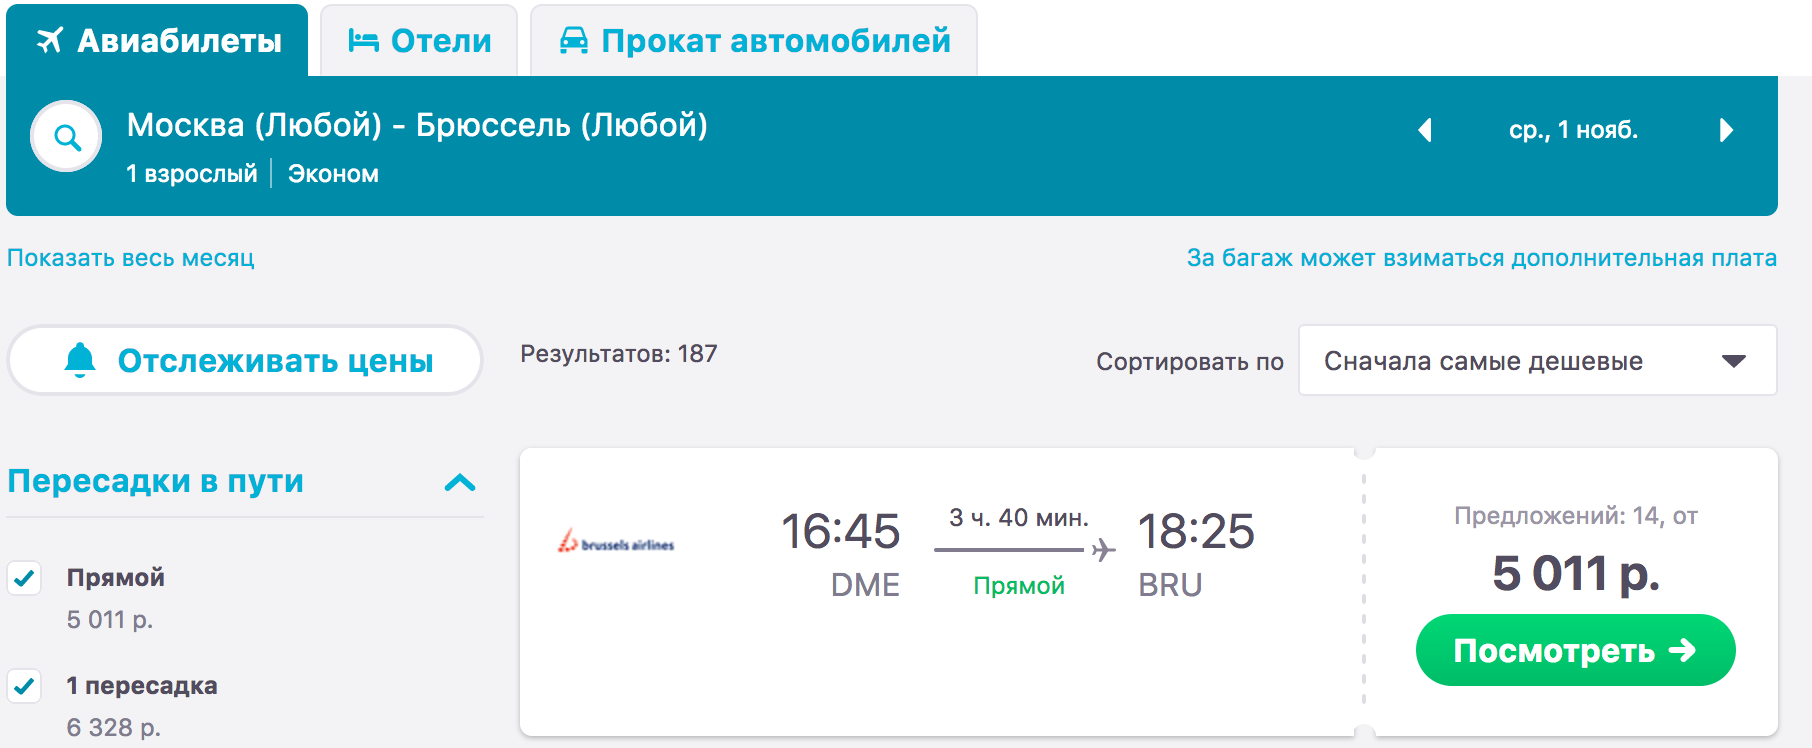 Билеты на самолет мин воды екатеринбург прямой авиабилет от москву до киргизии